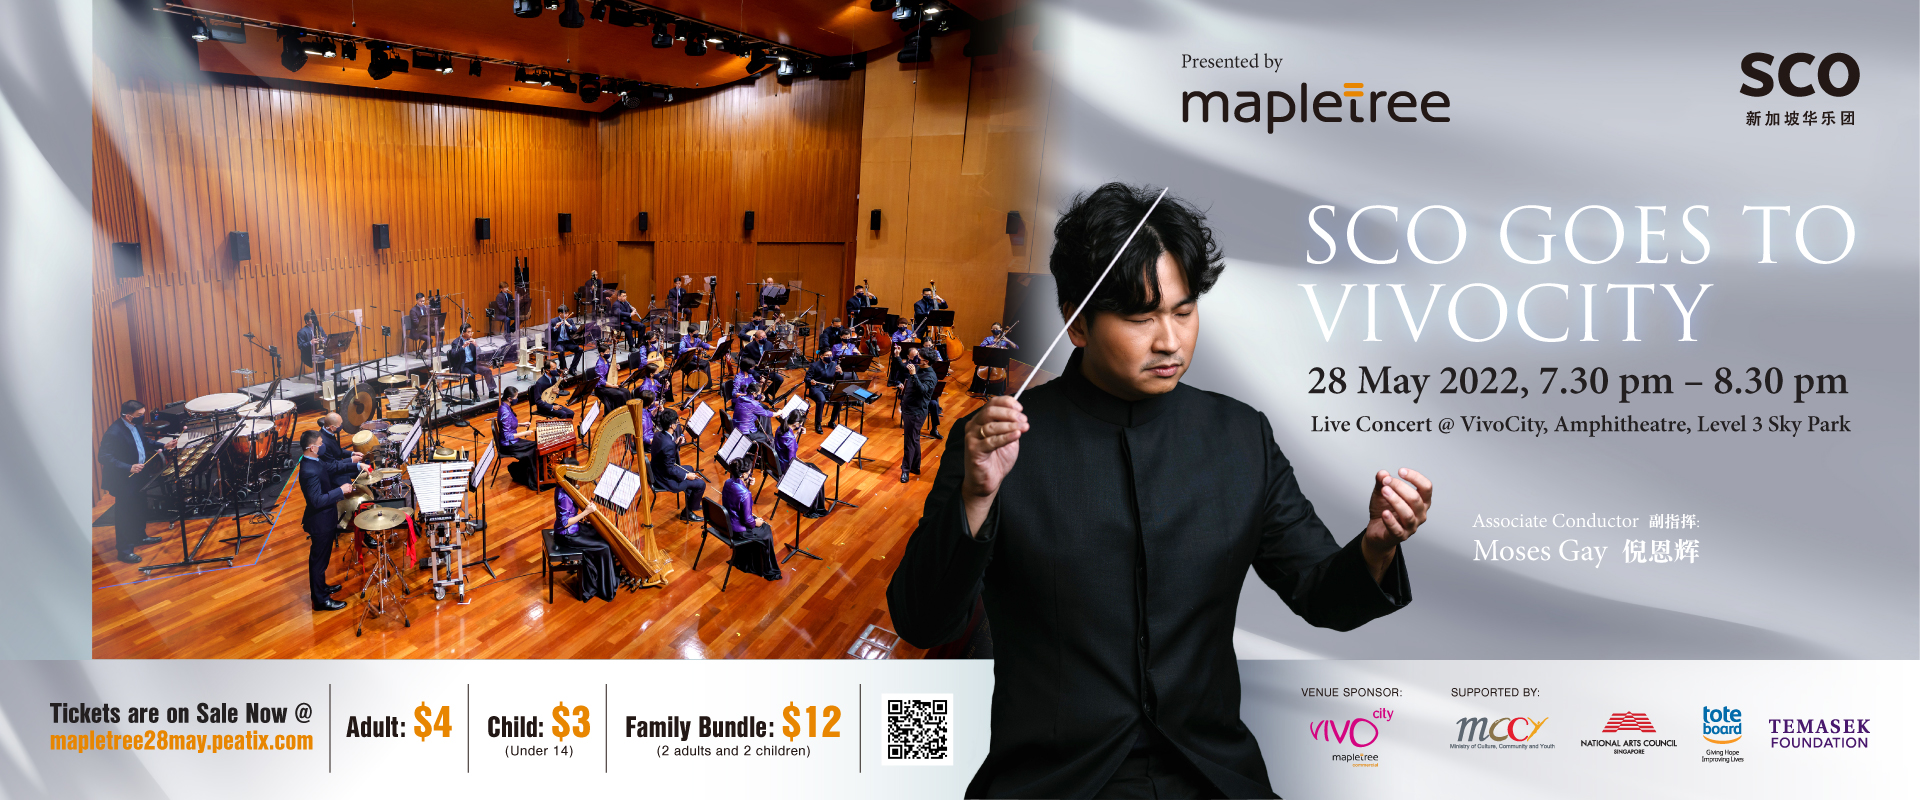 SCO_Mapletree_Concert_1920x800_3 校园音乐会